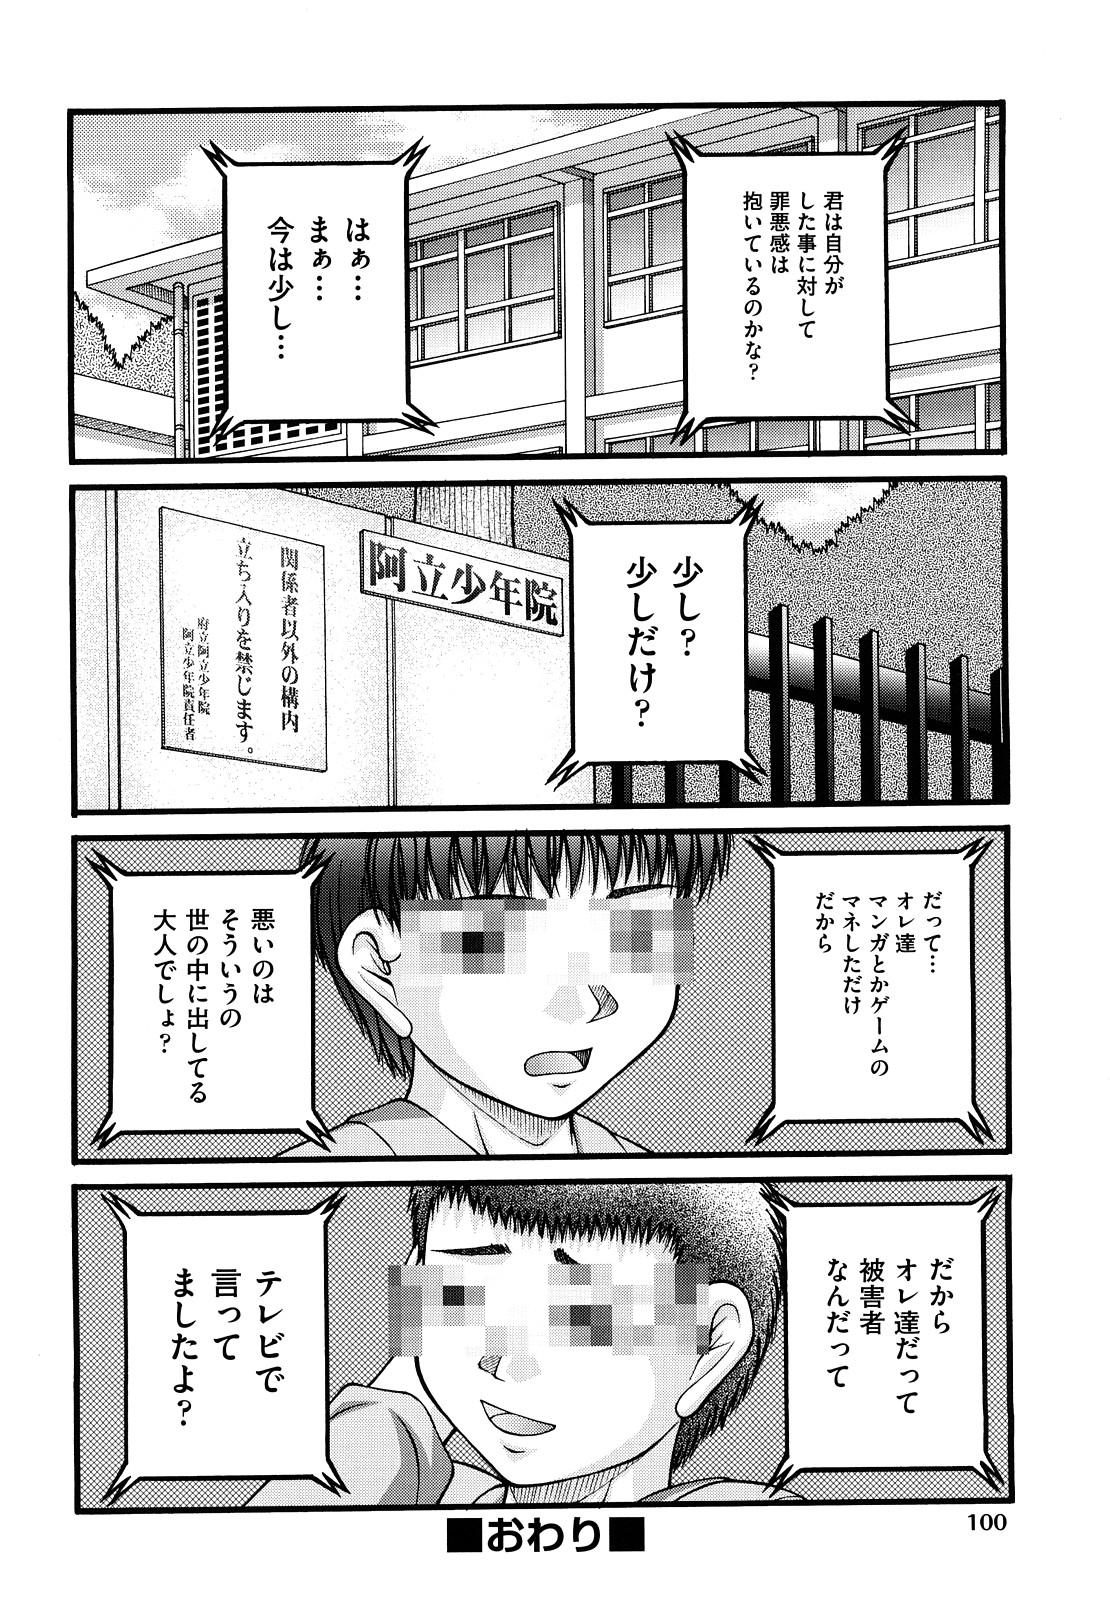 Shoujo Manga 102